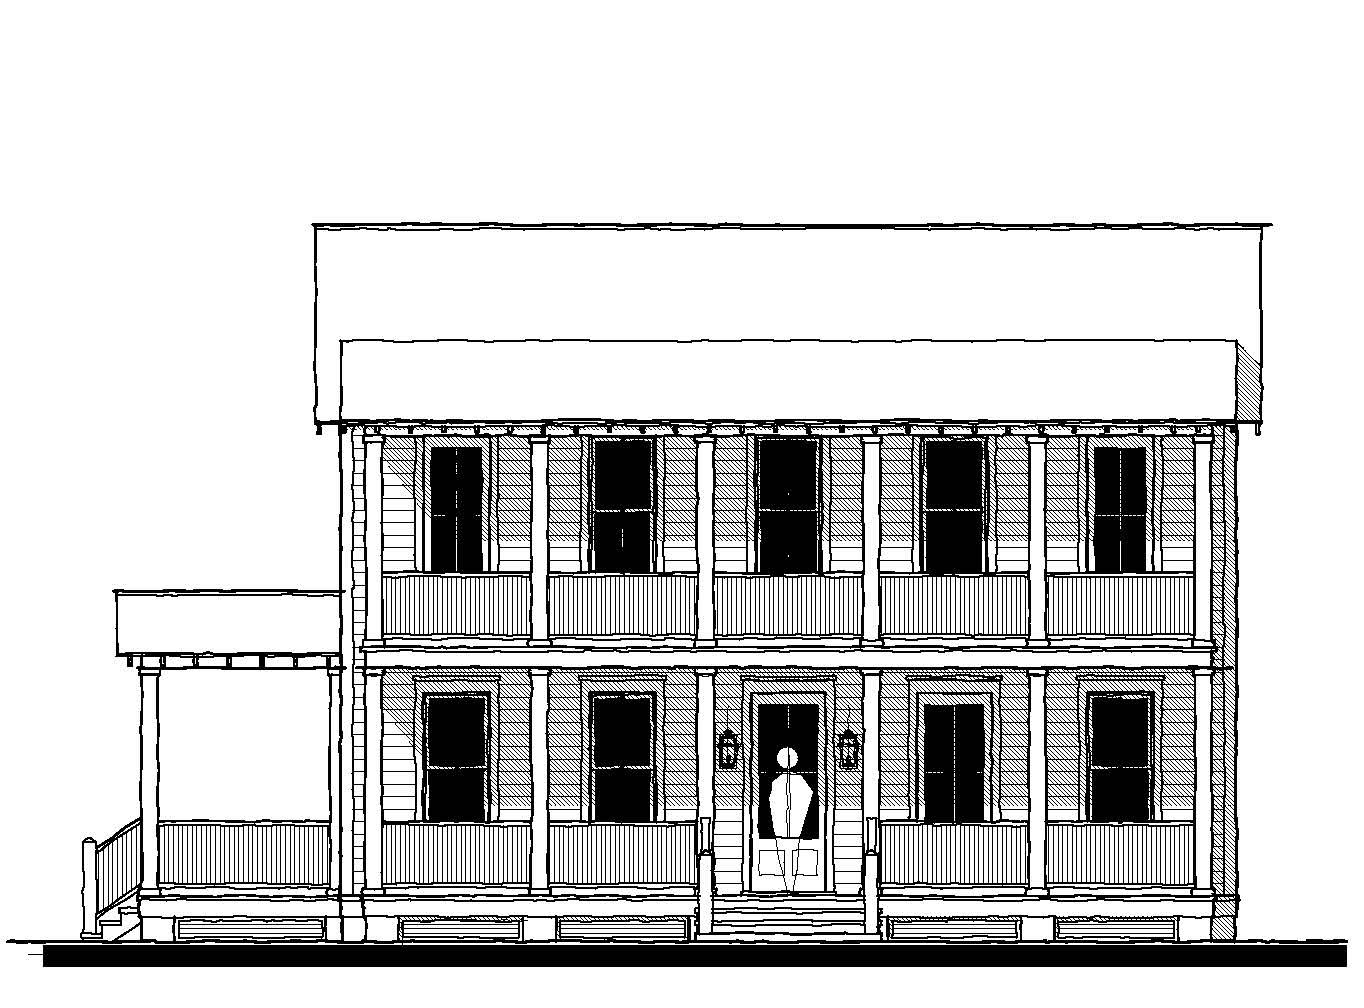 Quadplex Mansion Flats (18330B)